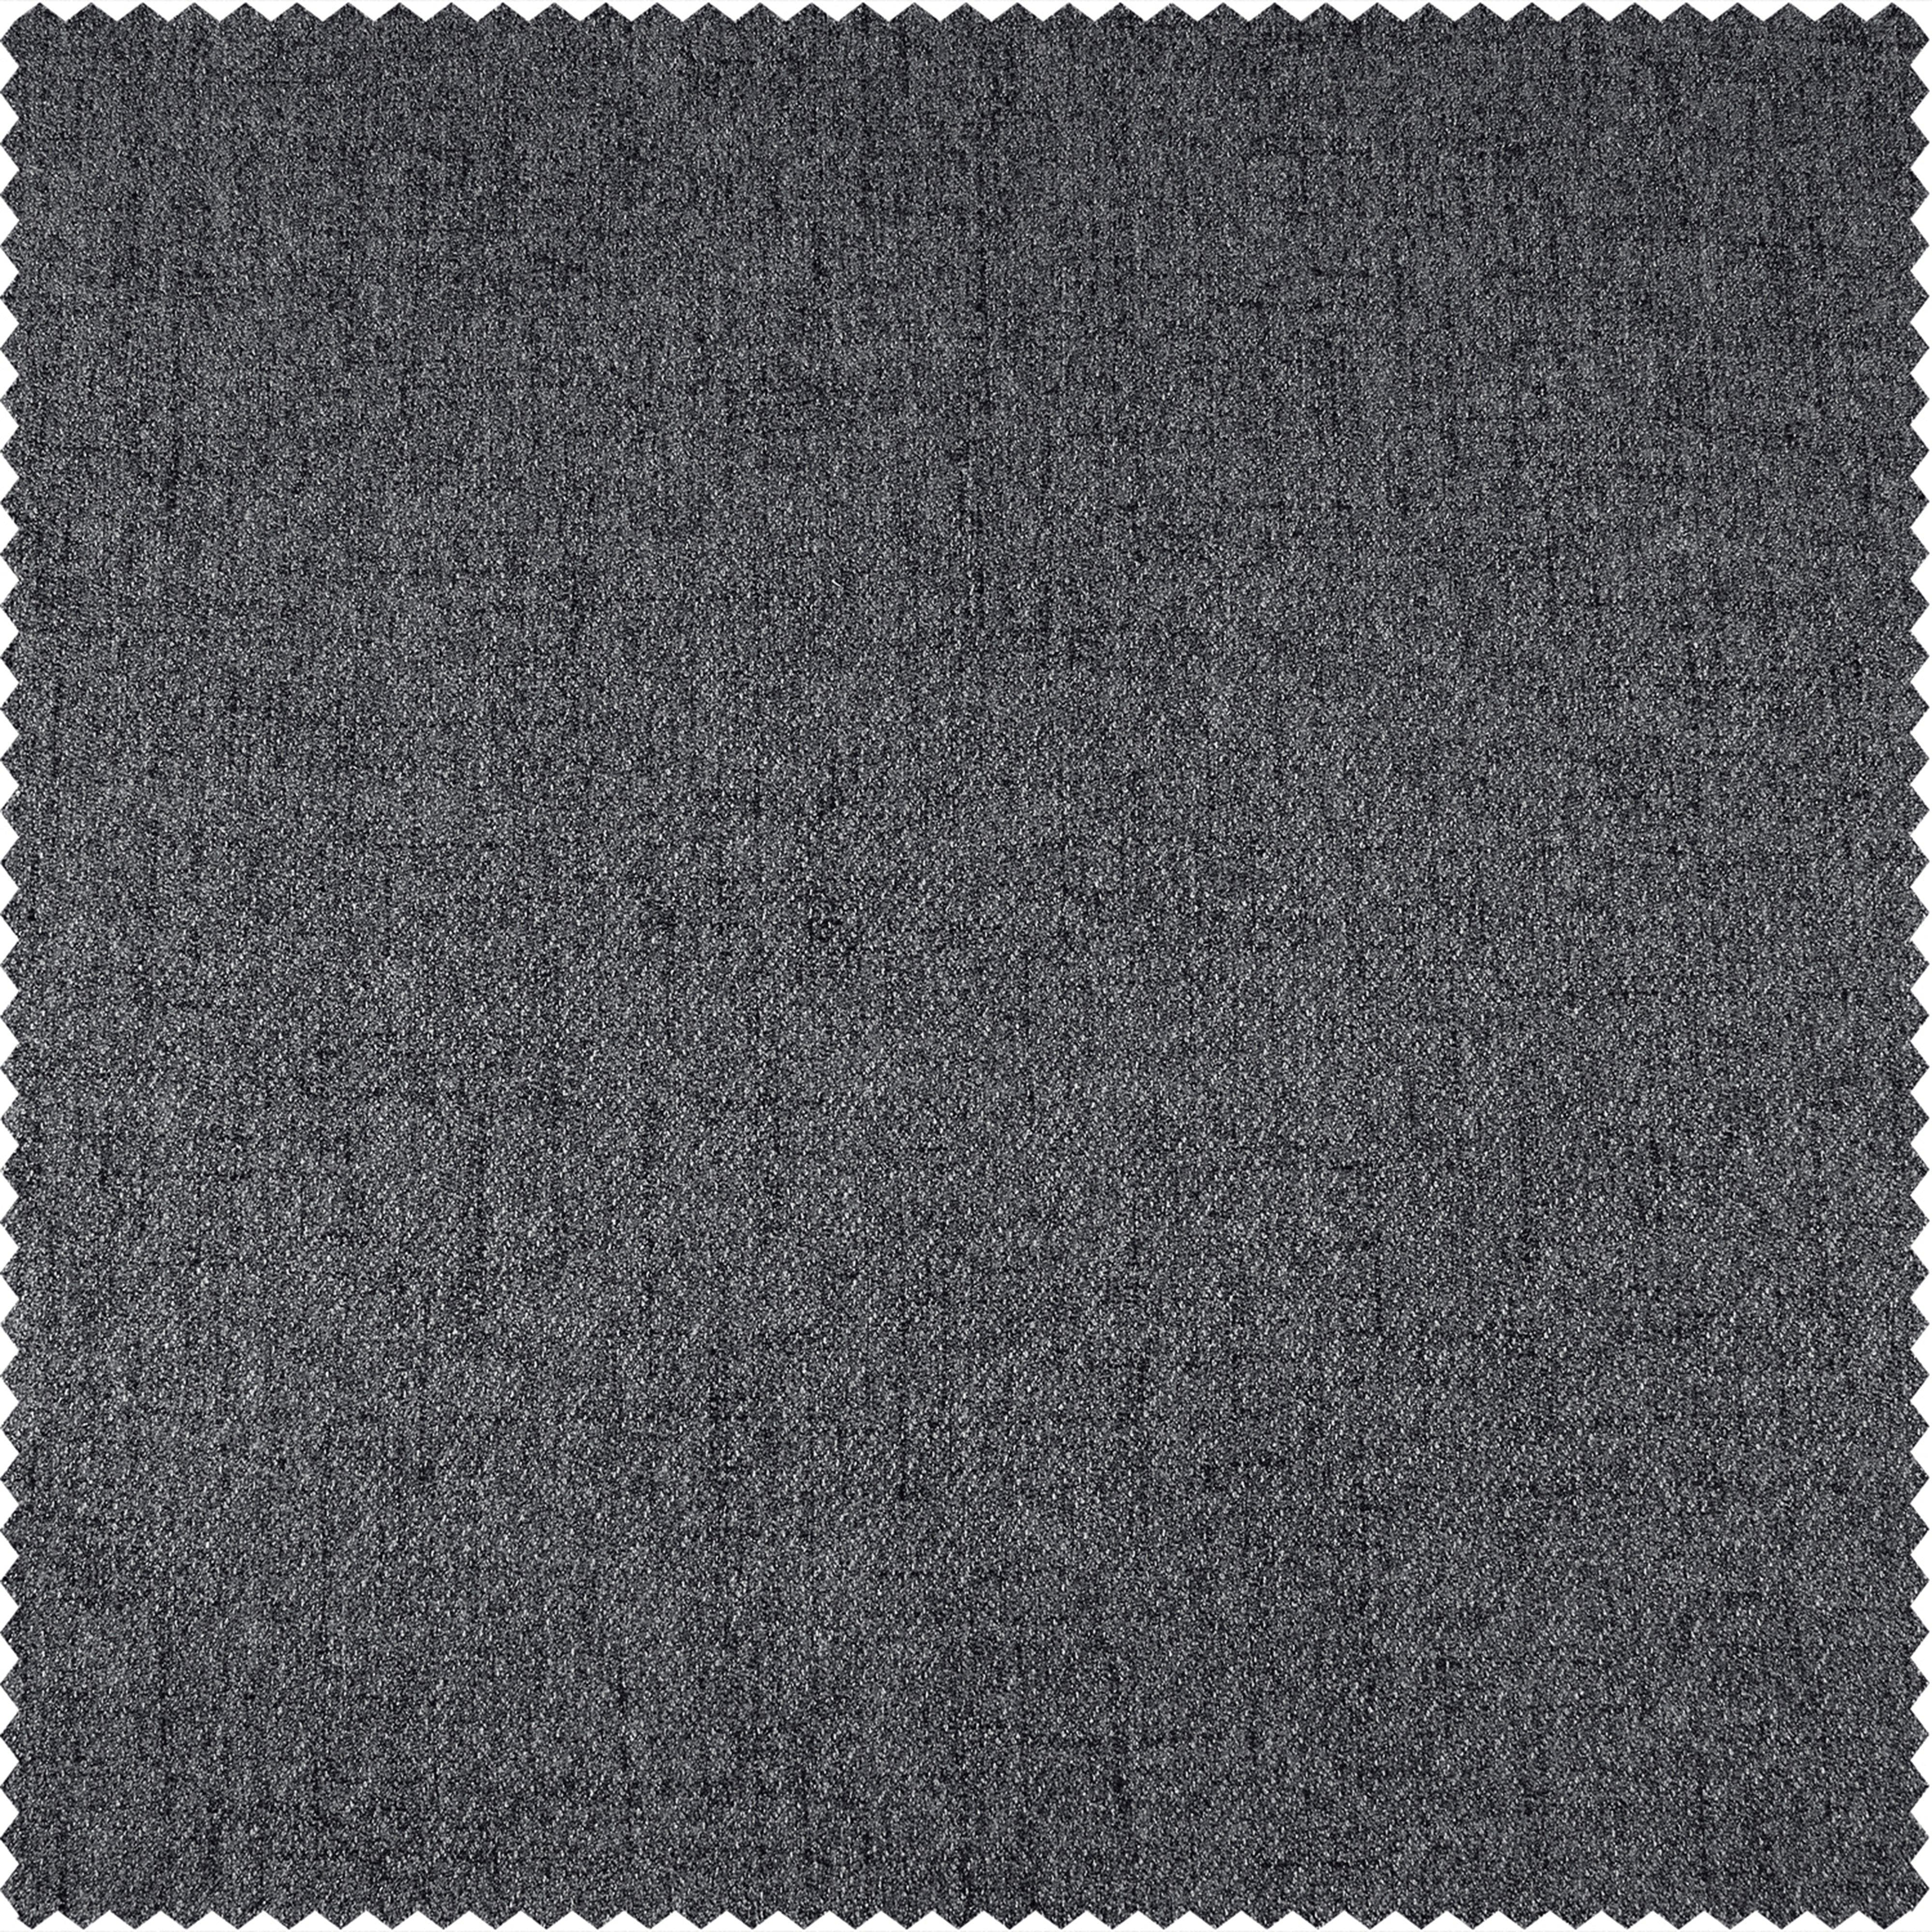 Modern Grey Heathered Woolen Weave Swatch